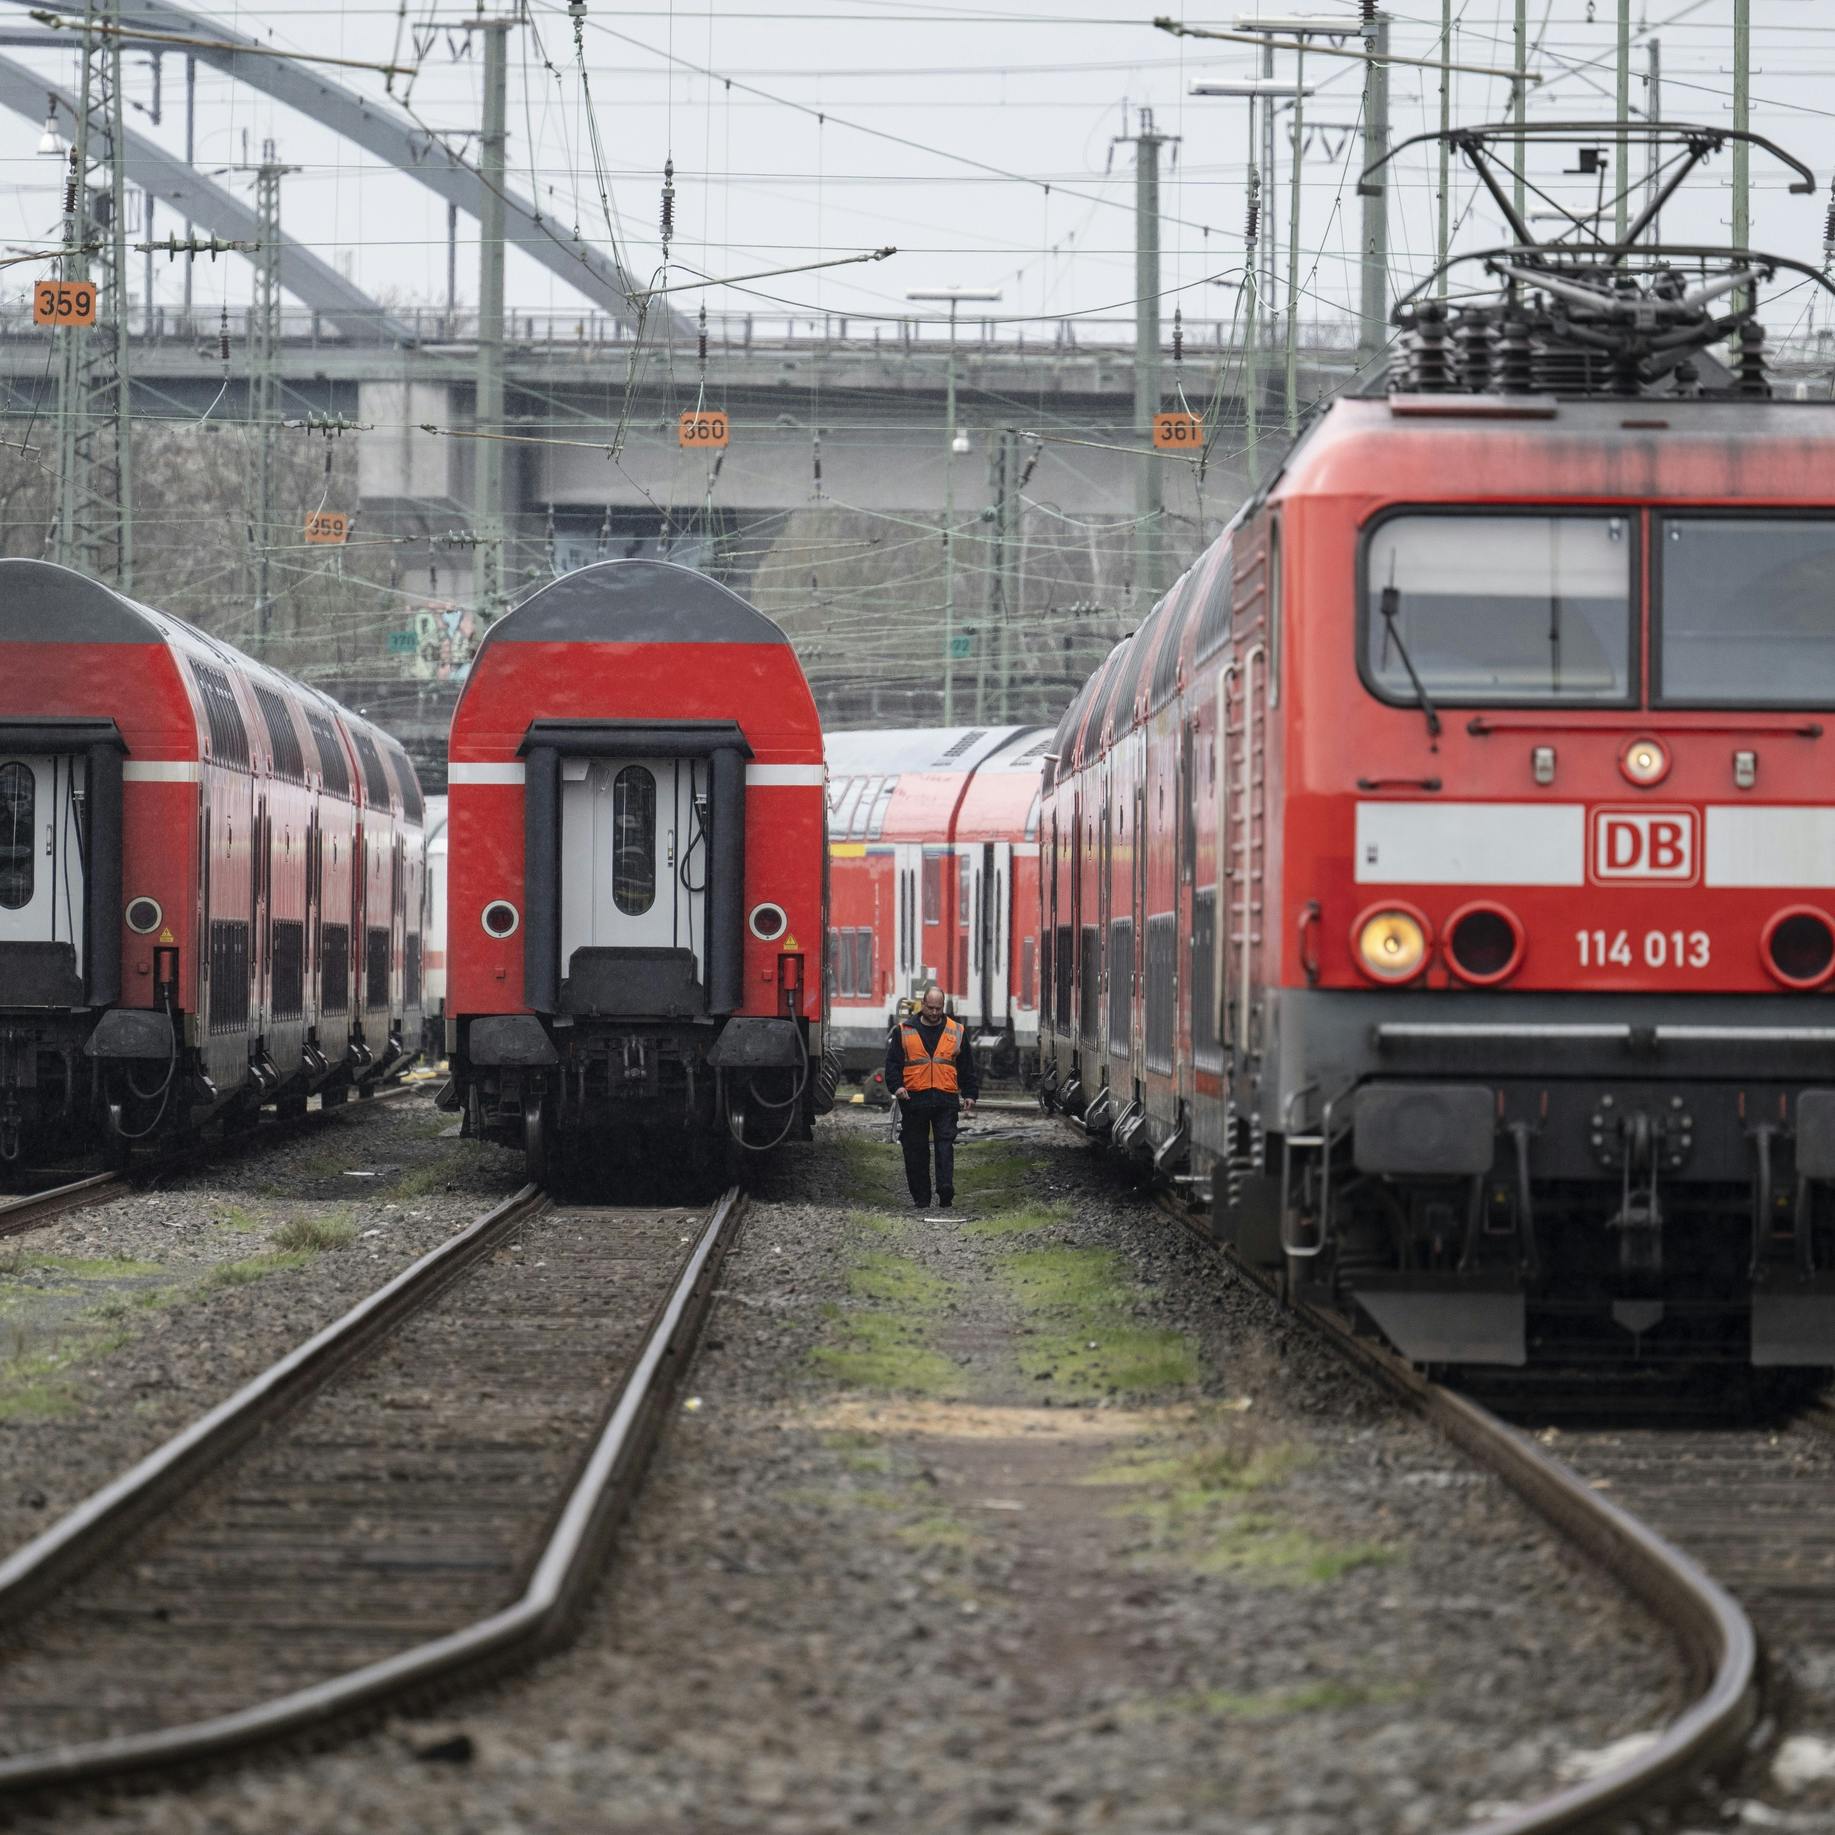 Peiling: meeste Duitsers hebben begrip voor grote staking vervoer